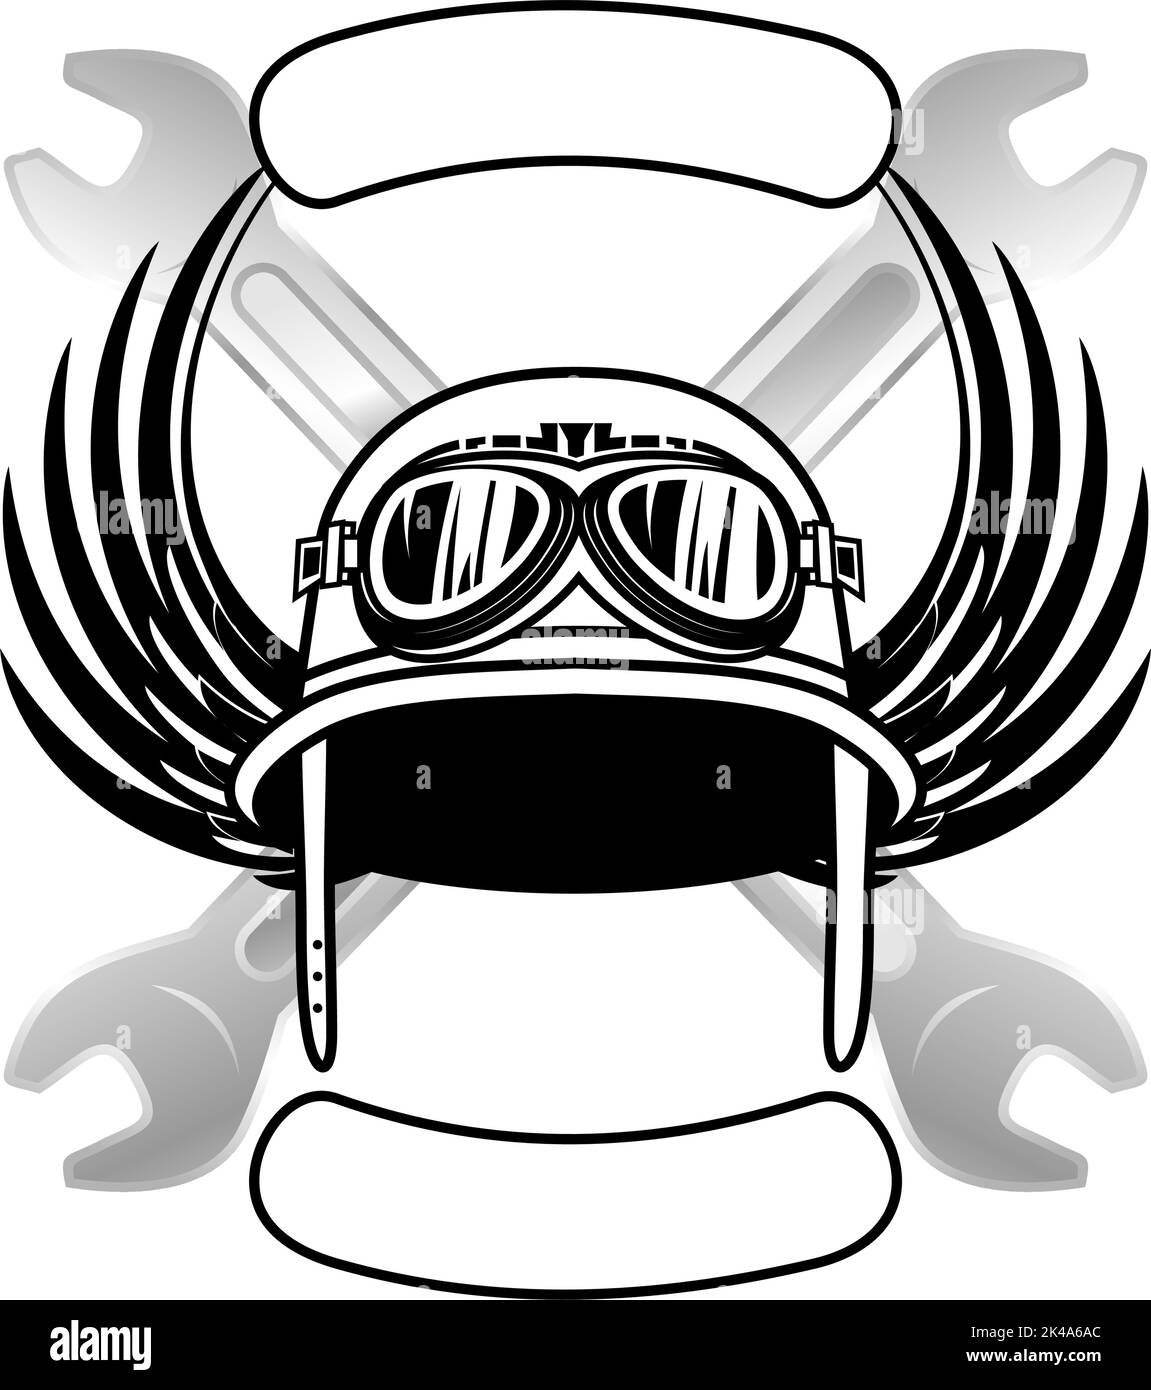 biker crest insignia tattoo helmet illustration sticker in vector format Stock Vector